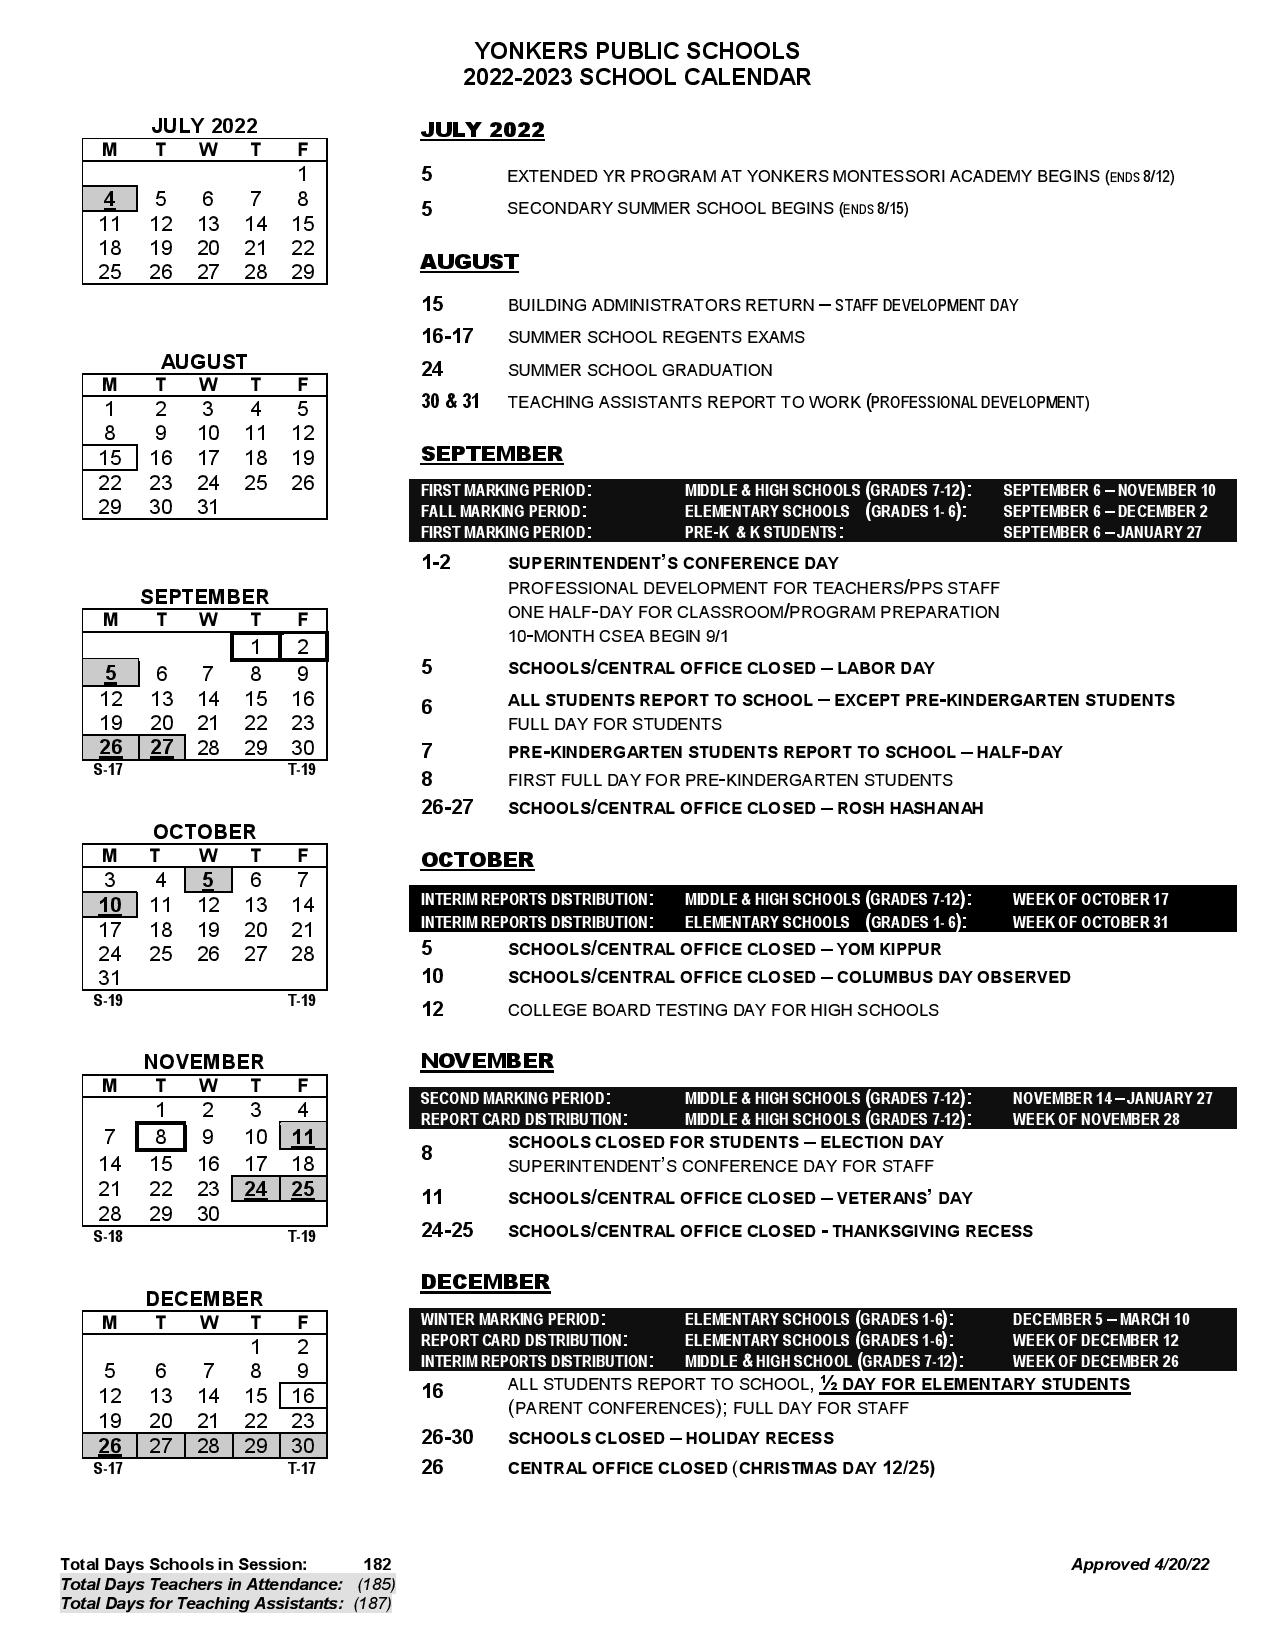 Yonkers Public Schools Calendar 2022-2023 in PDF